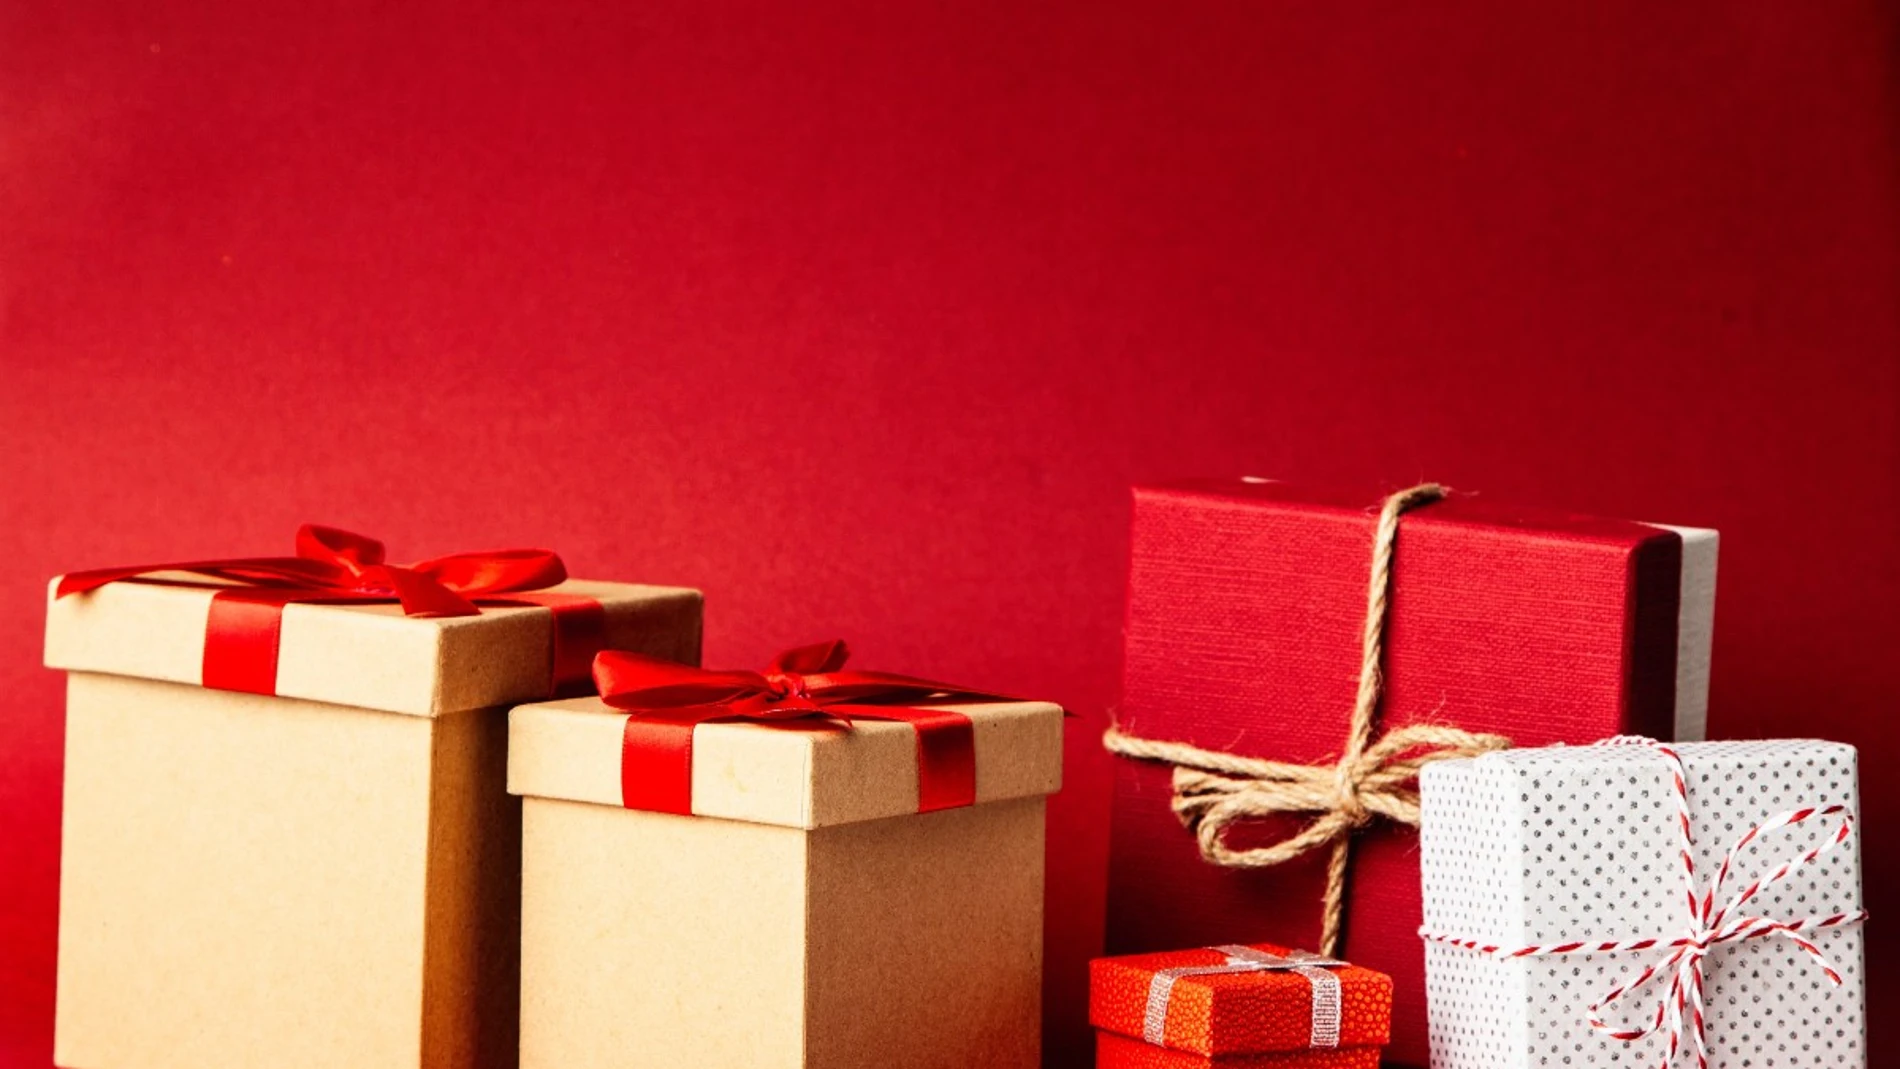  8 ideas de regalos de navidad, originales y por menos de 35 euros